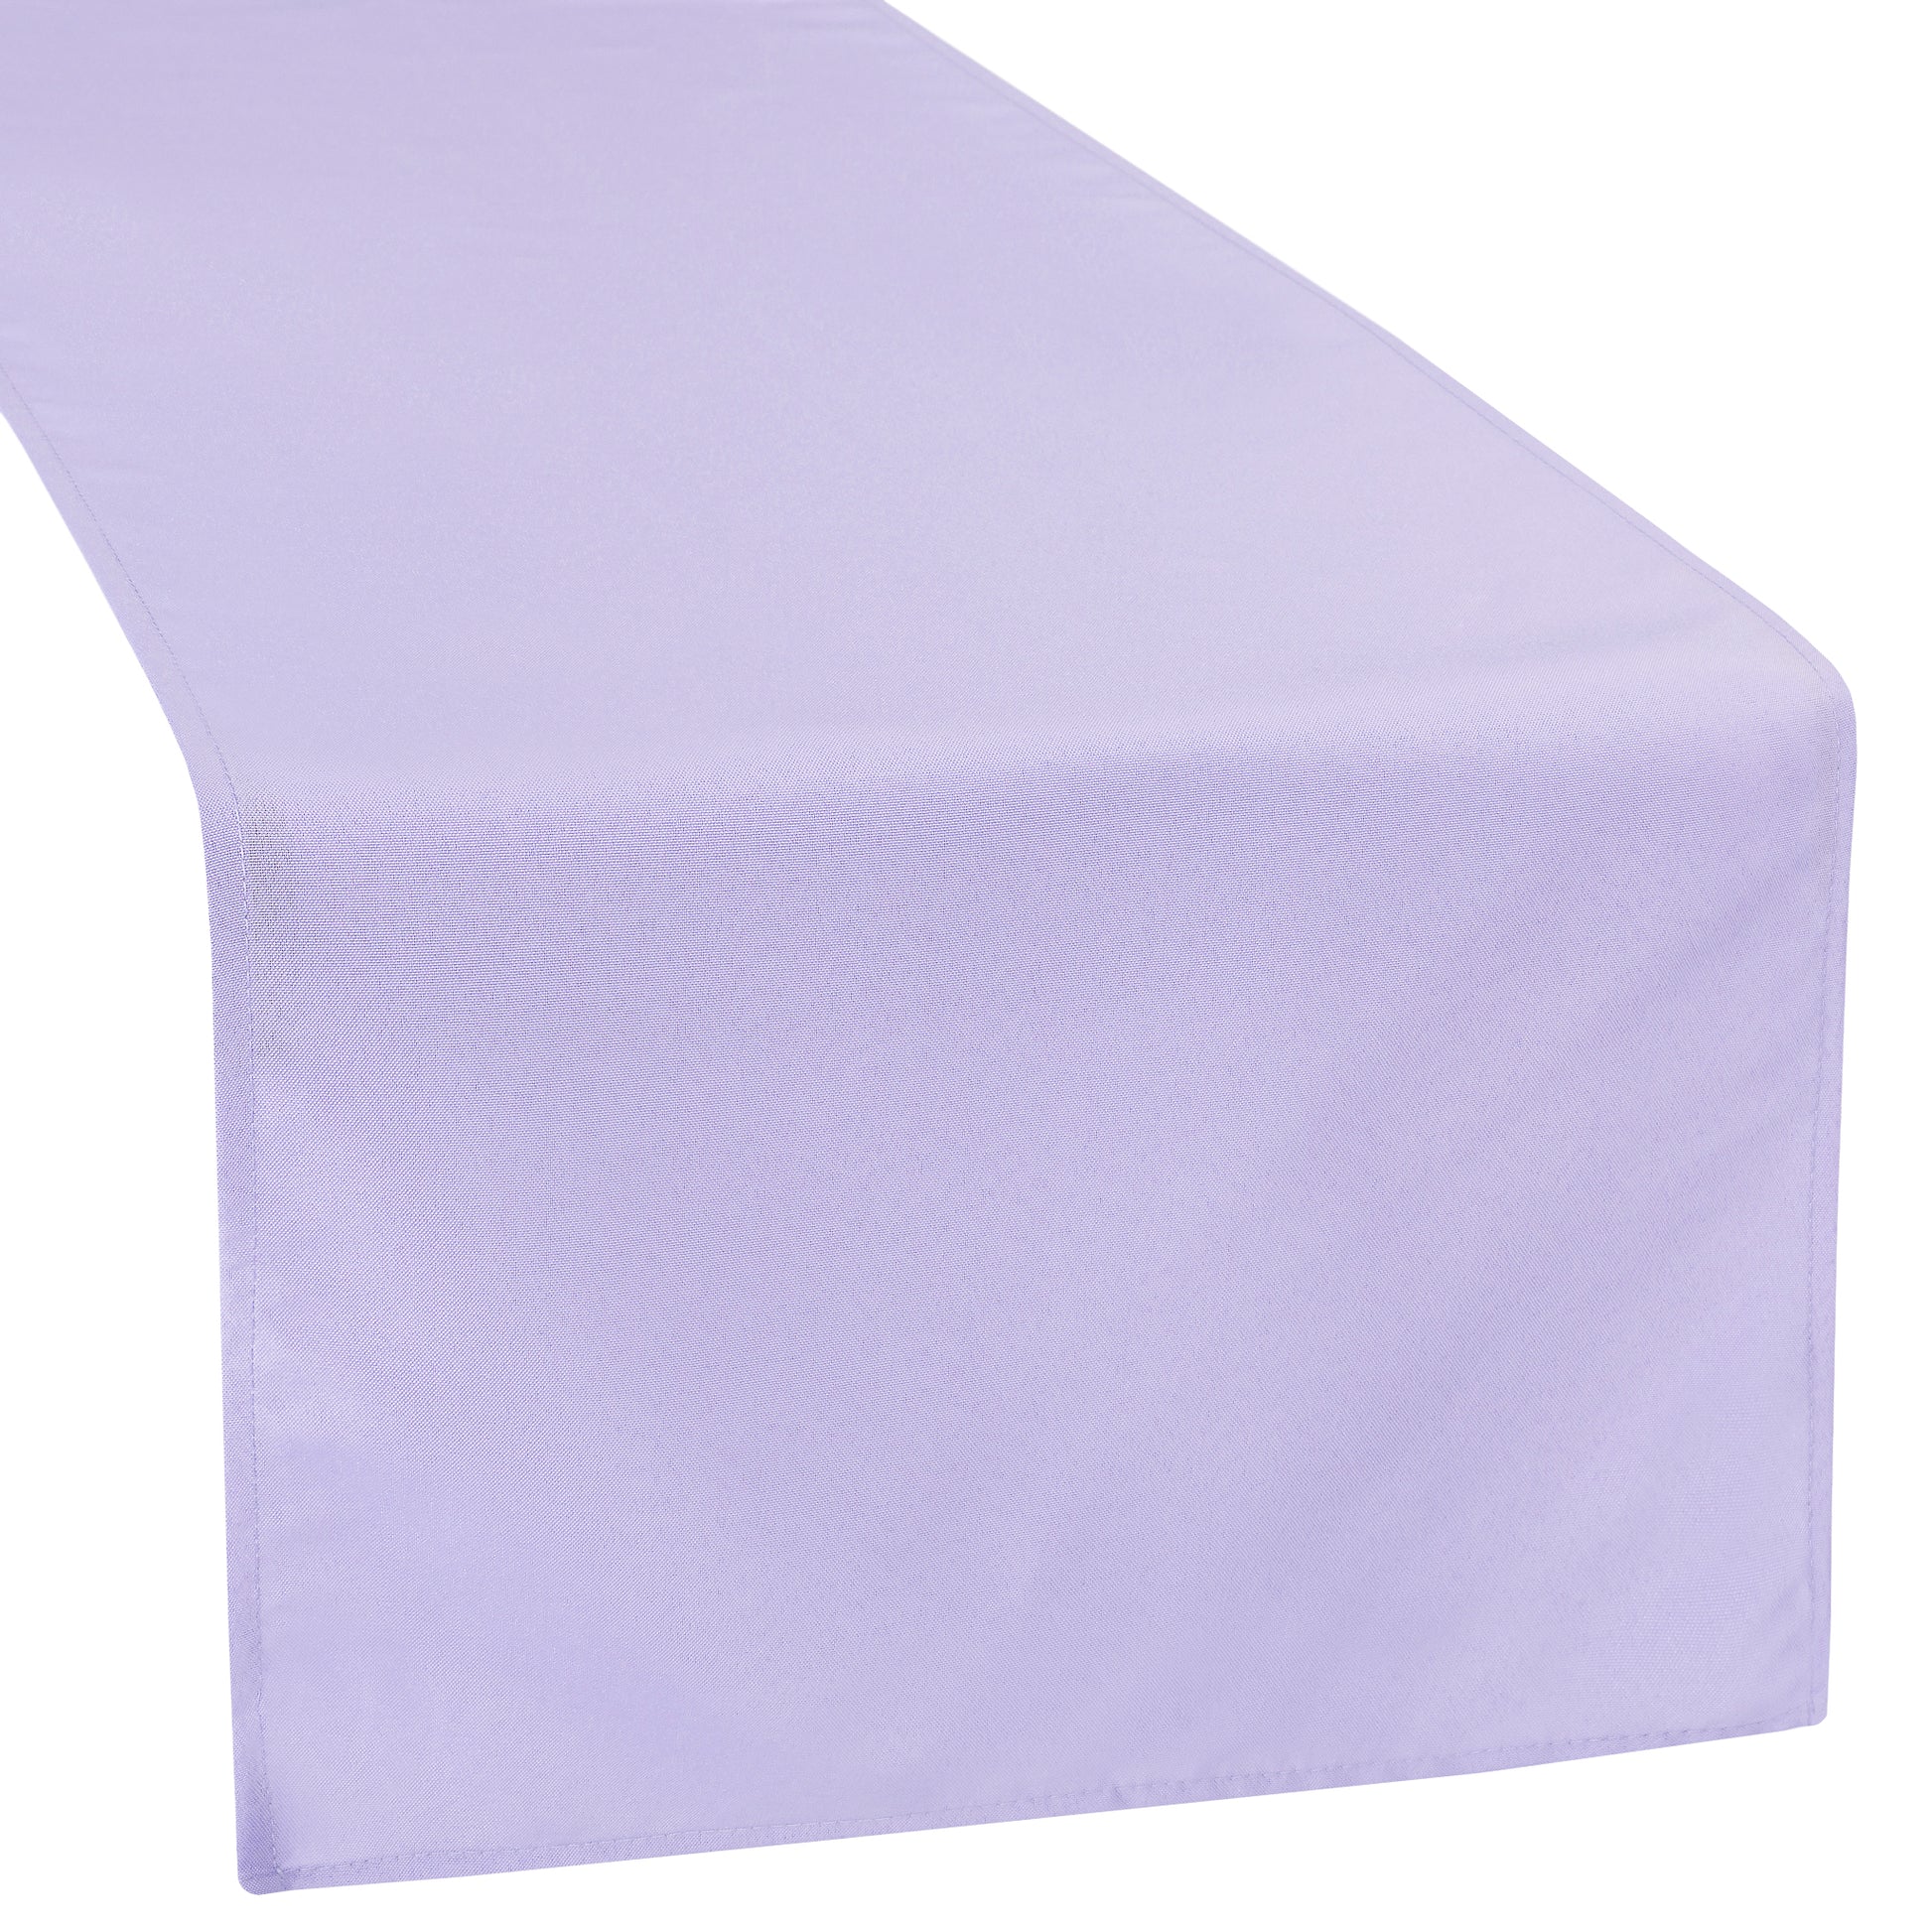 Polyester Table Runner - Lavender - CV Linens